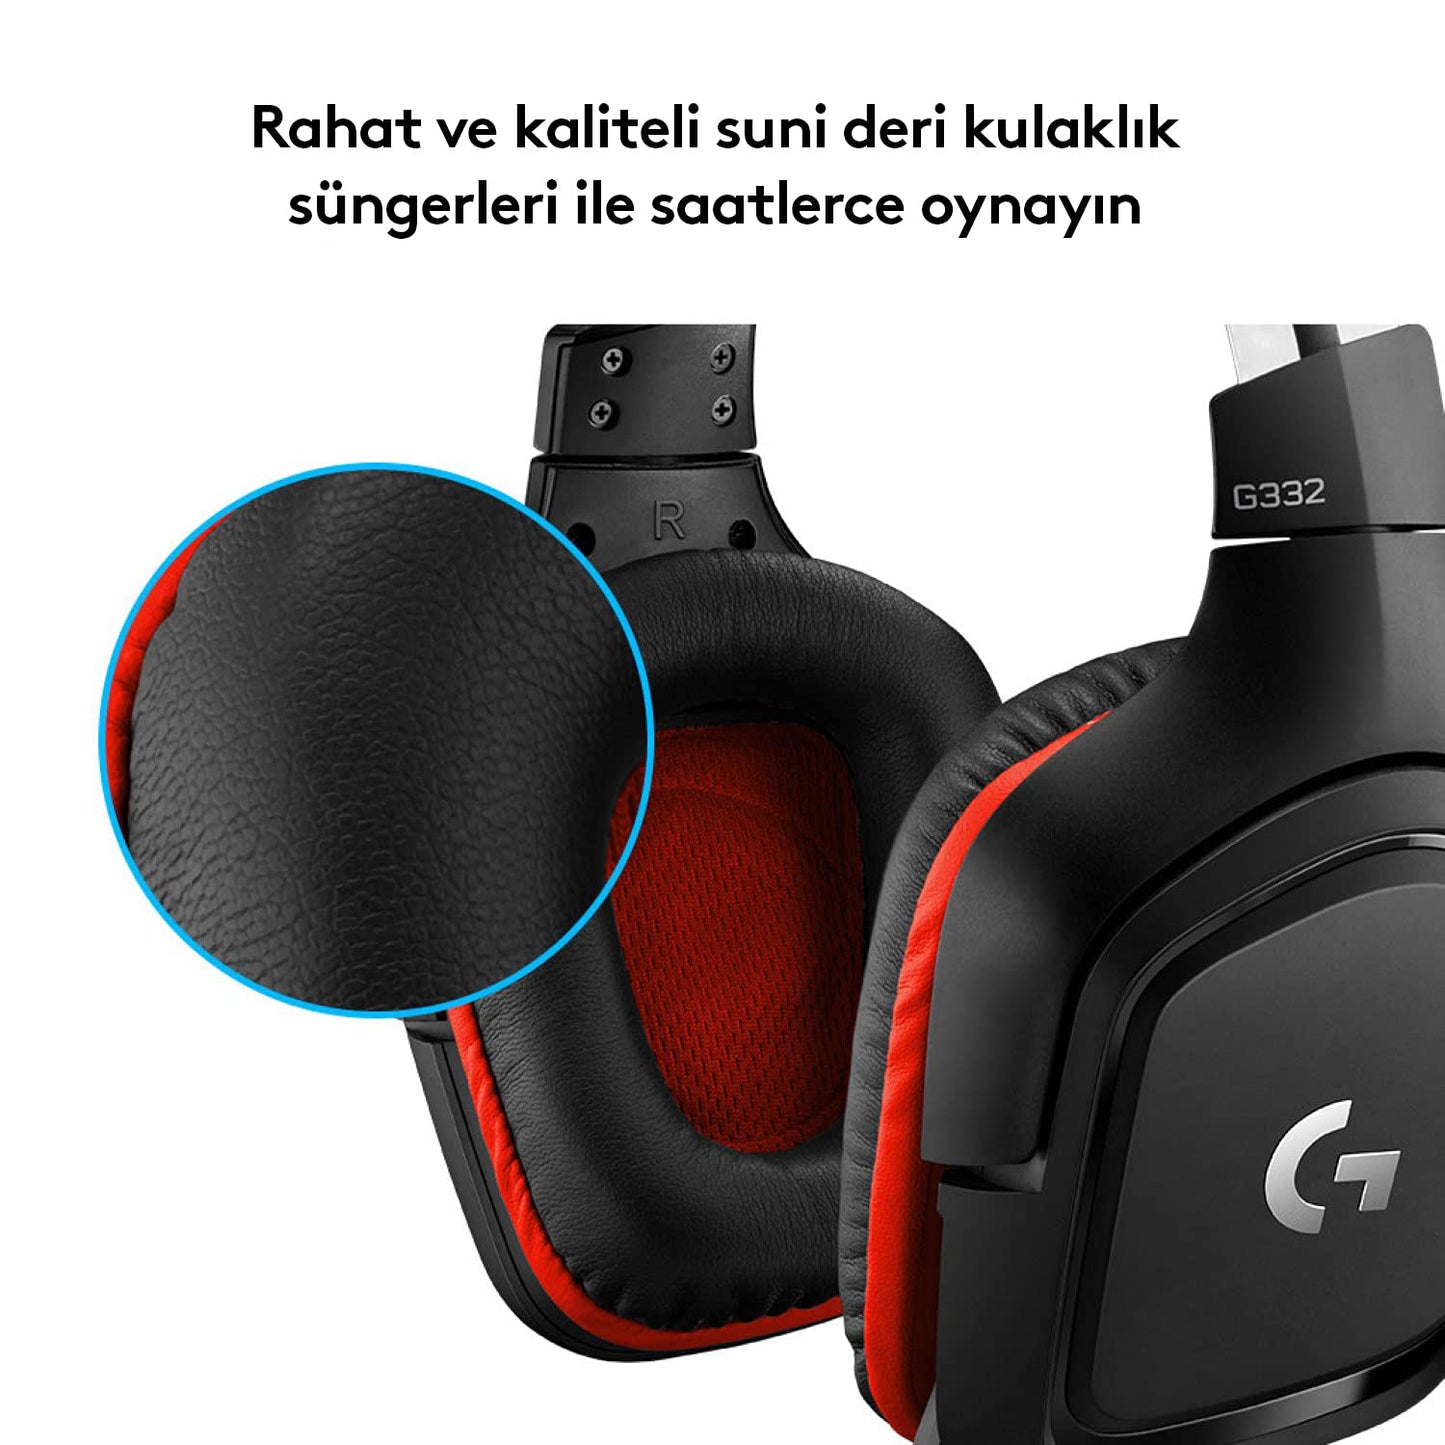 Logitech G G332 Kablolu Kulak Üstü Oyuncu Kulaklığı, 50 mm Ses Sürücüleri, 6 mm Katanarak Sessize Alınan Mikrofon, 2 m Kablo Uzunluğu, Siyah